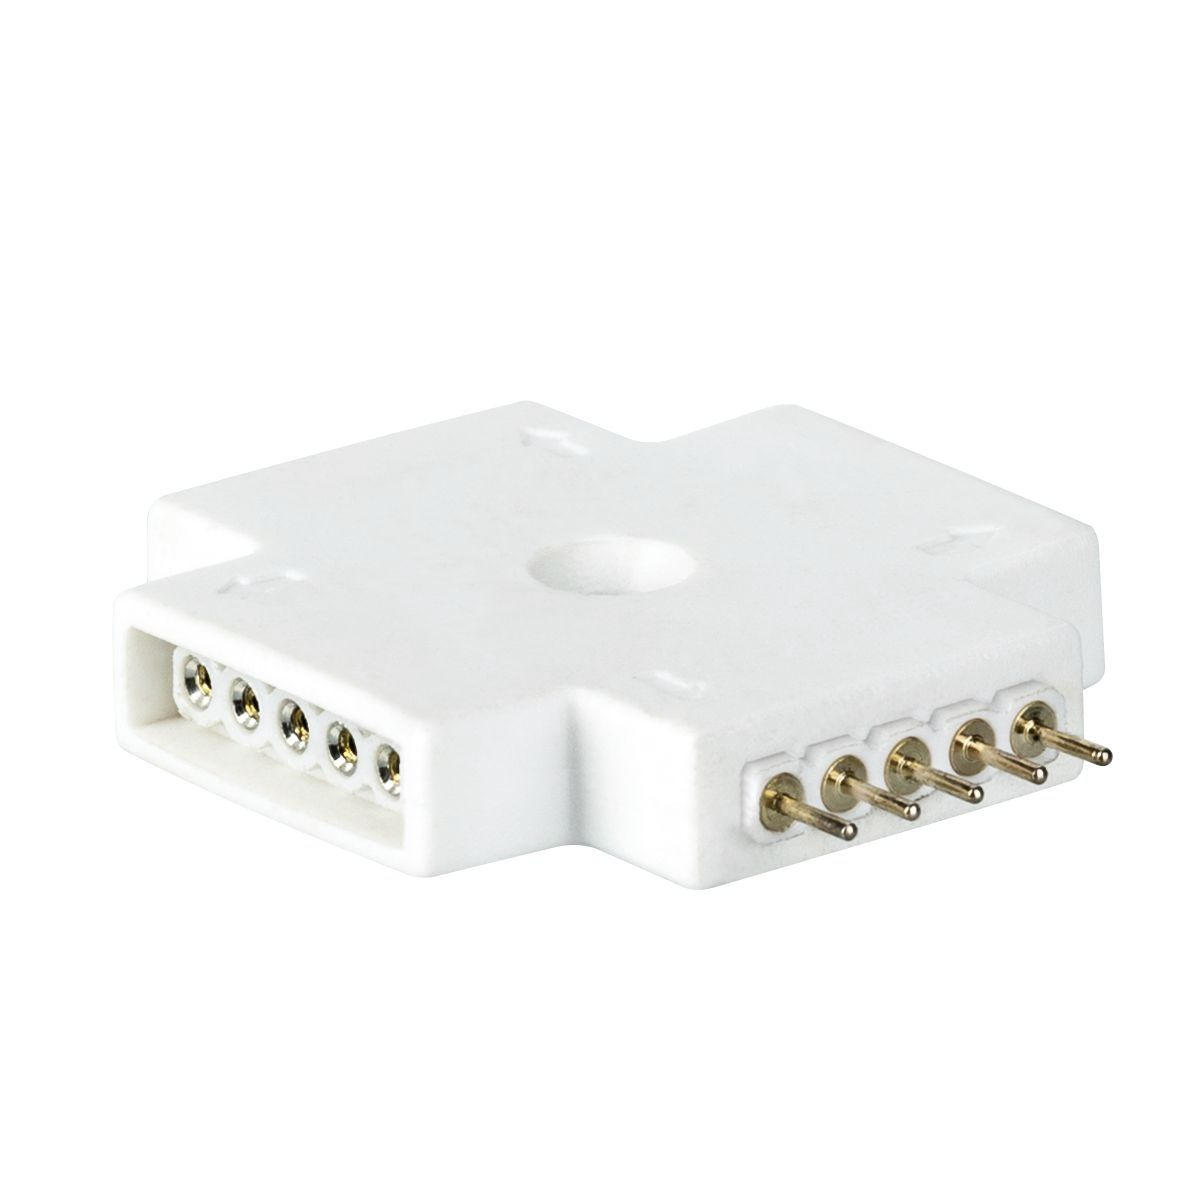 LED-STRIP  - Weiß, Basics, Kunststoff (3,2/0,6cm) - Paulmann